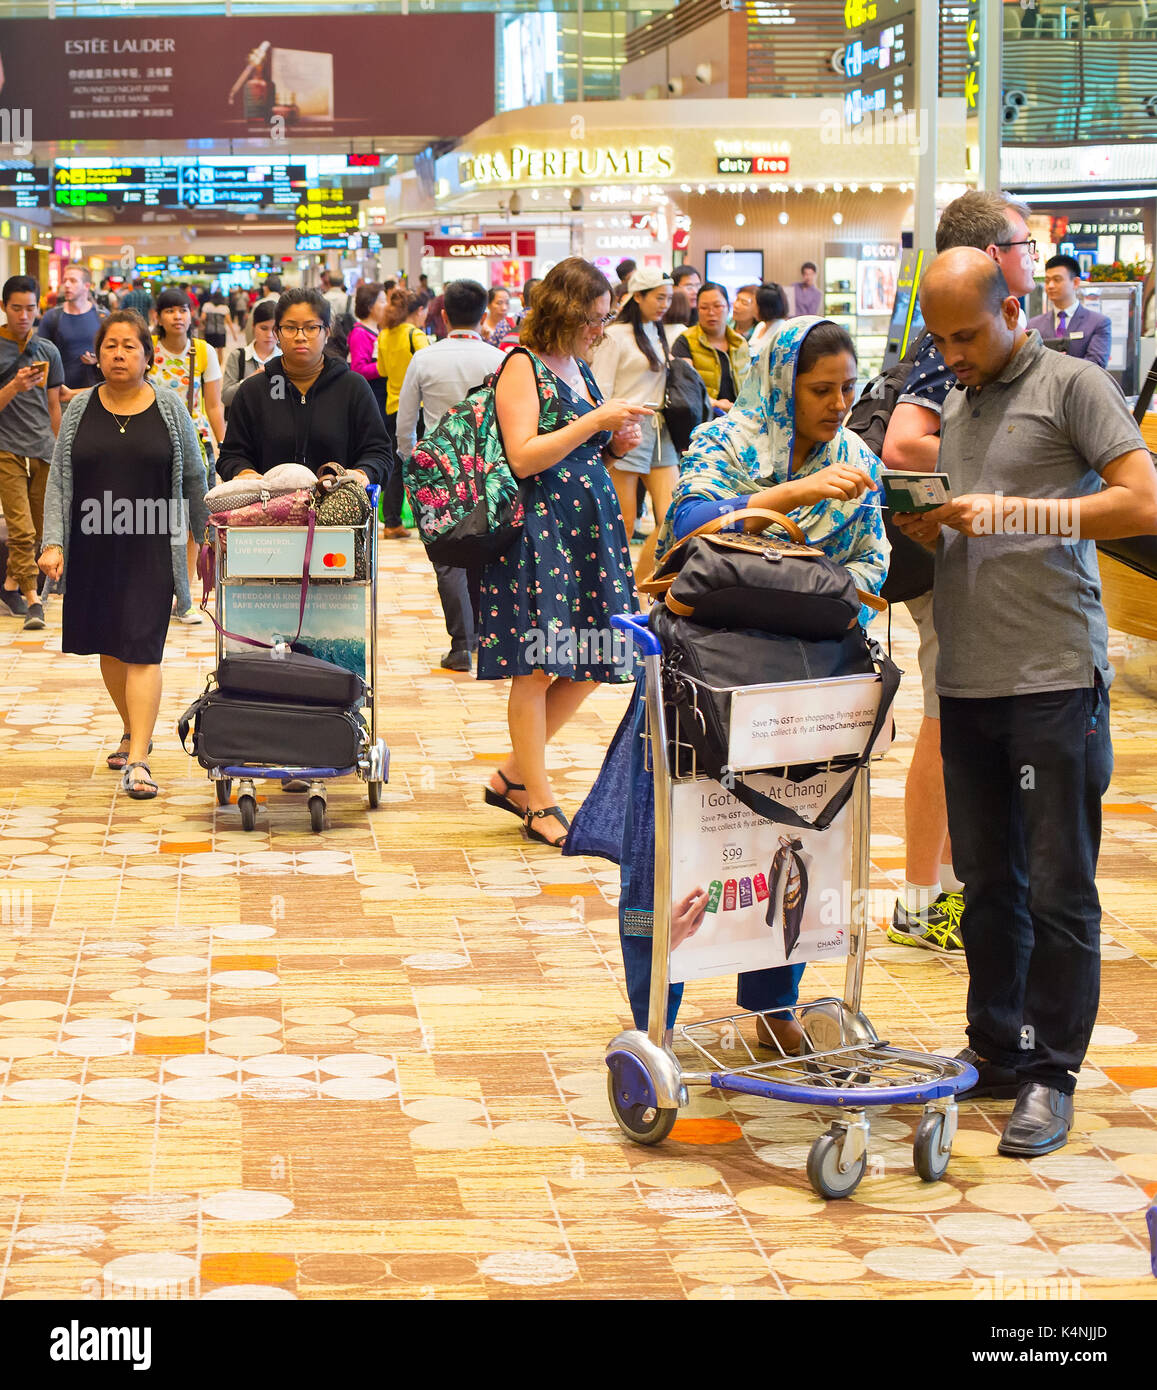 Singapour - Le 13 janvier 2017 : beaucoup de personnes dans l'aéroport international de Changi hall. L'aéroport de Changi est au service de plus de 100 compagnies aériennes exploitant 6 100 par semaine Banque D'Images